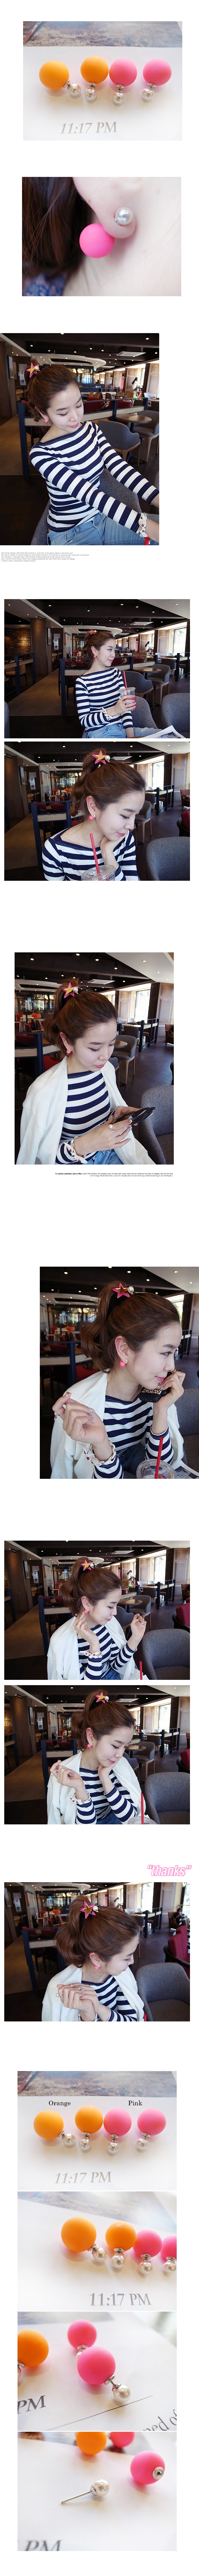 韓國 NaniWorld 青春無敵粉橘耳球佐珍珠氛圍耳飾 #2596 粉橘